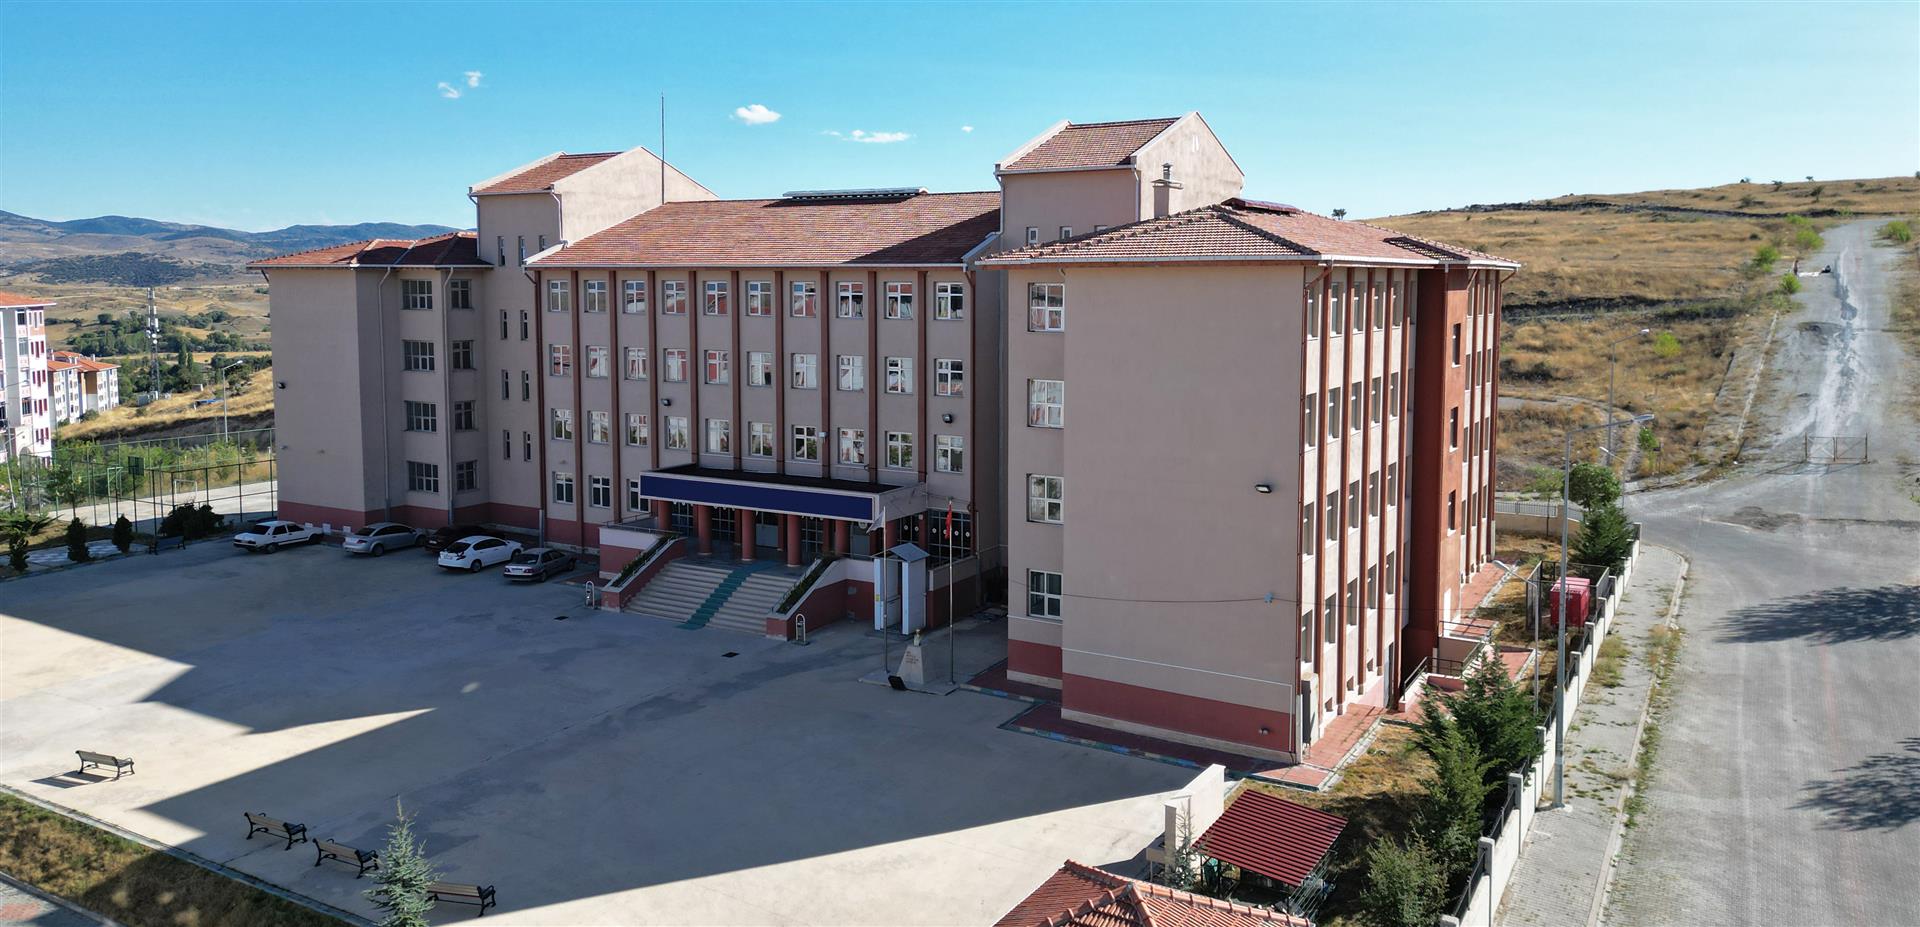 cankiri universitesi find and study 3 - Çankırı Karatekin Üniversitesi